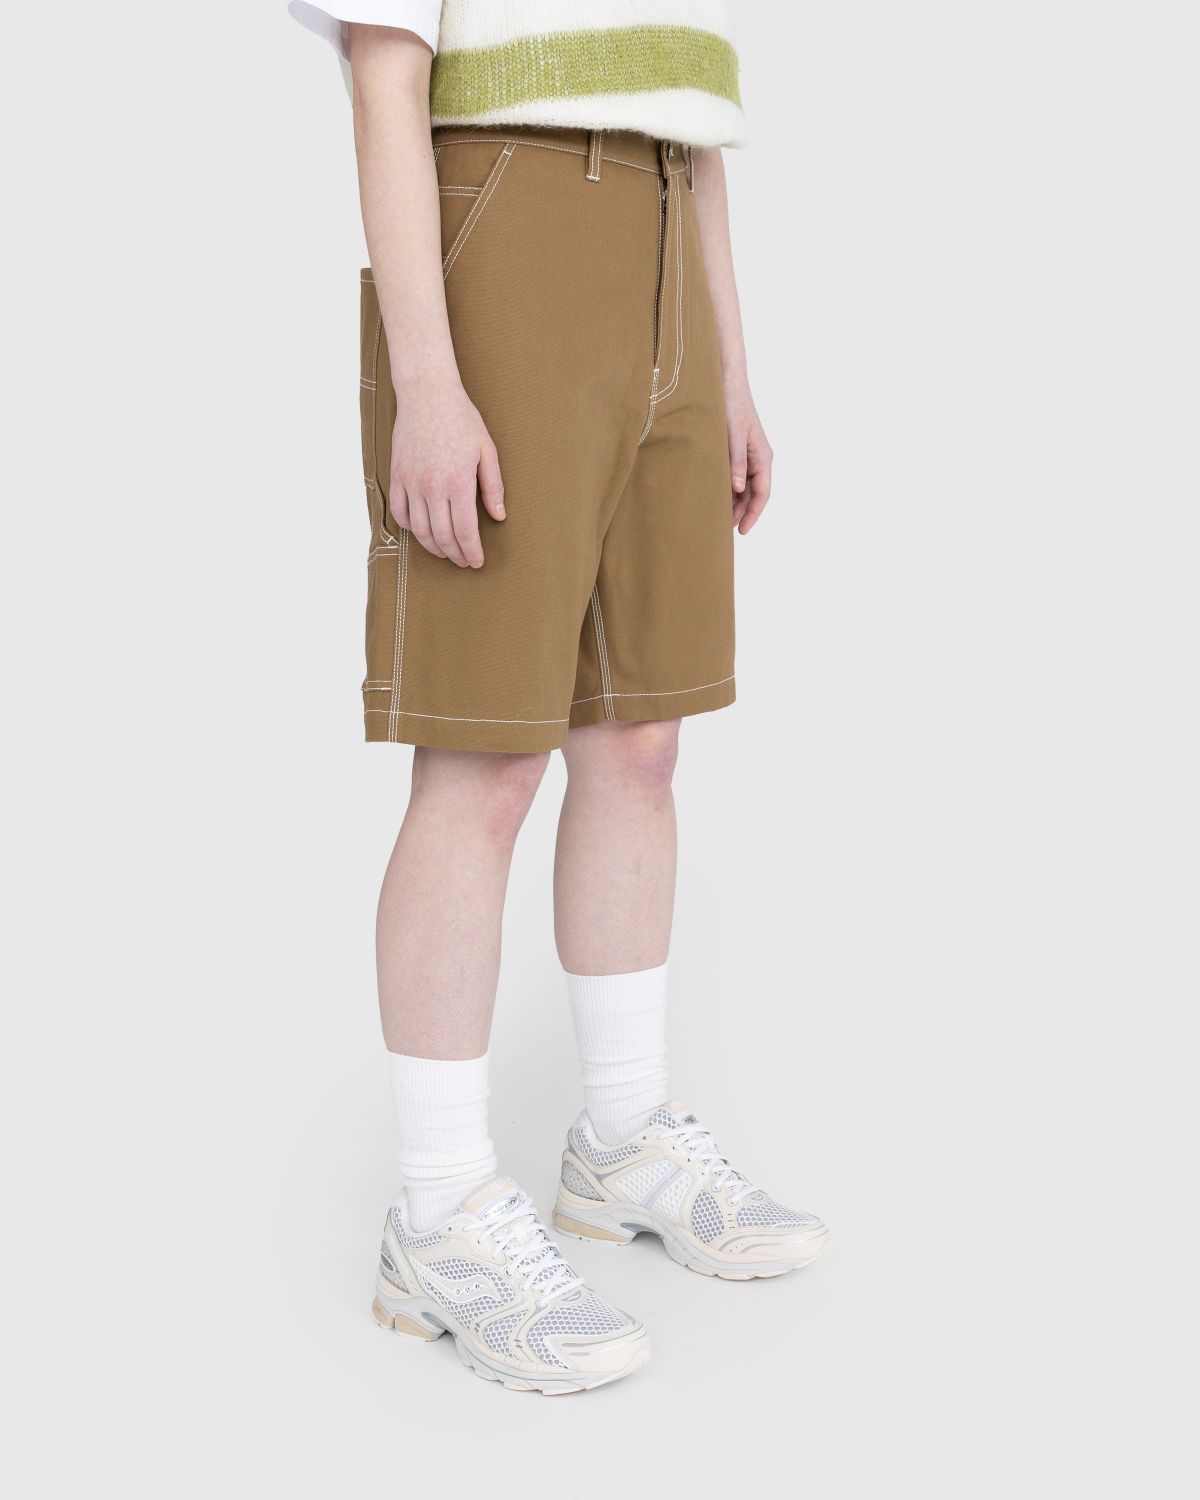 Highsnobiety – Carpenter Shorts Dark Beige - Shorts - Brown - Image 4